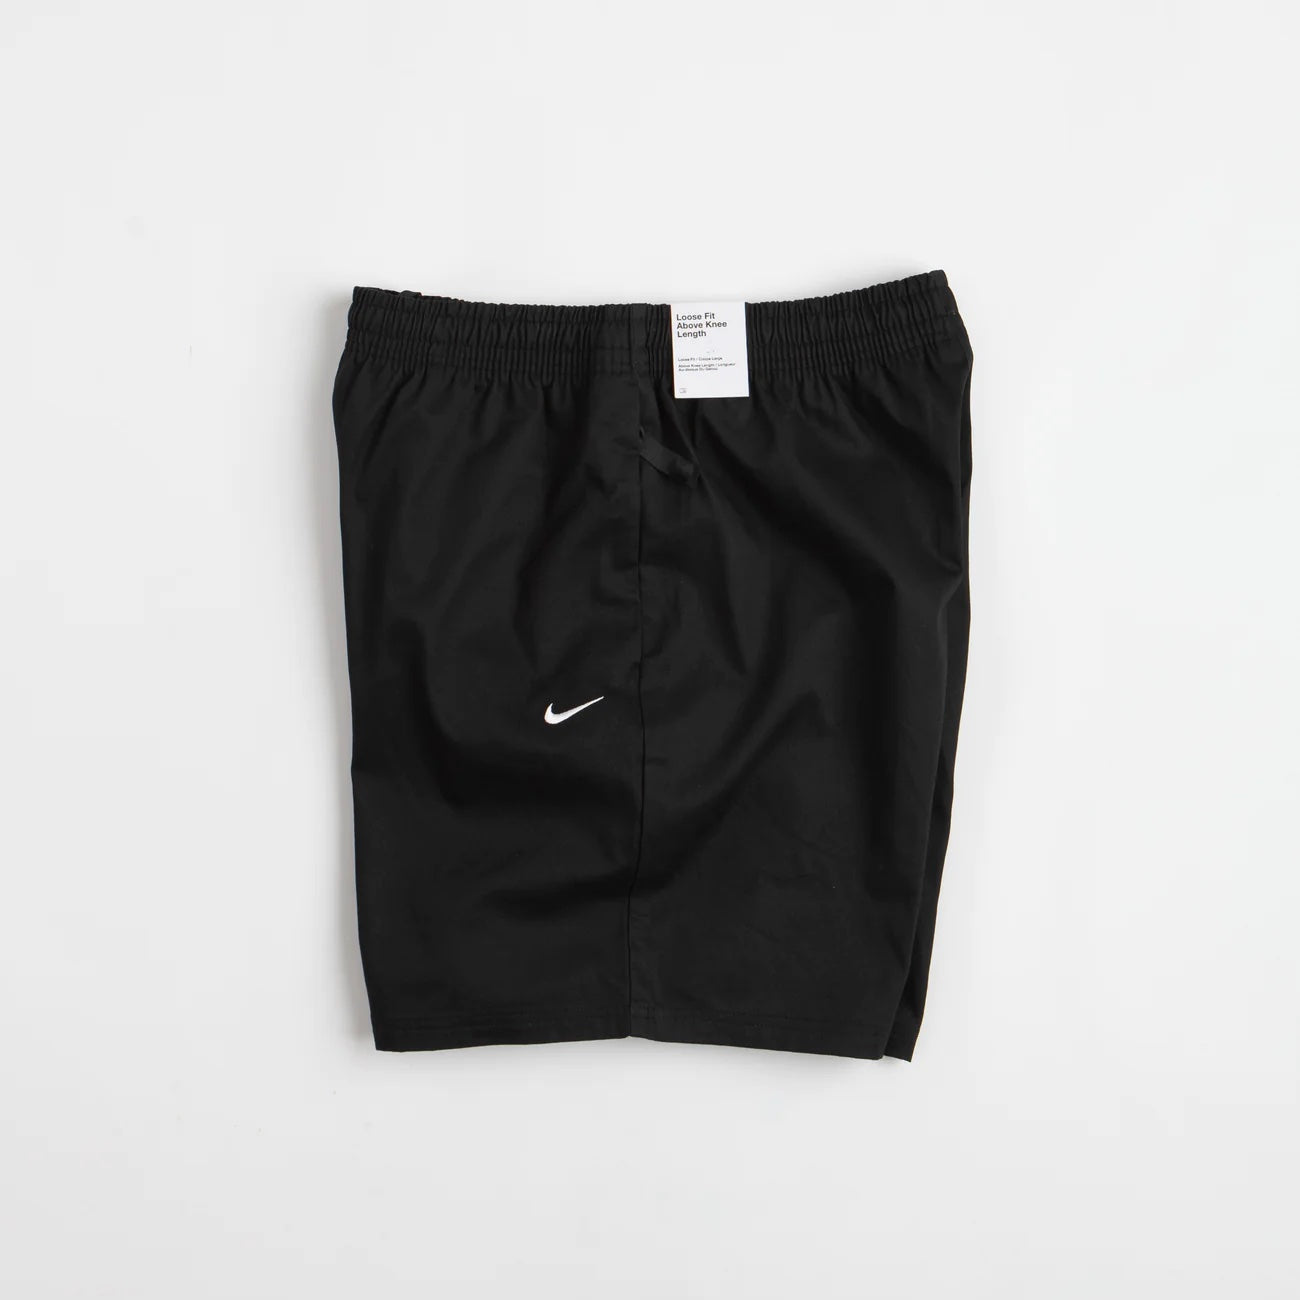 Nike SB short Skyring black